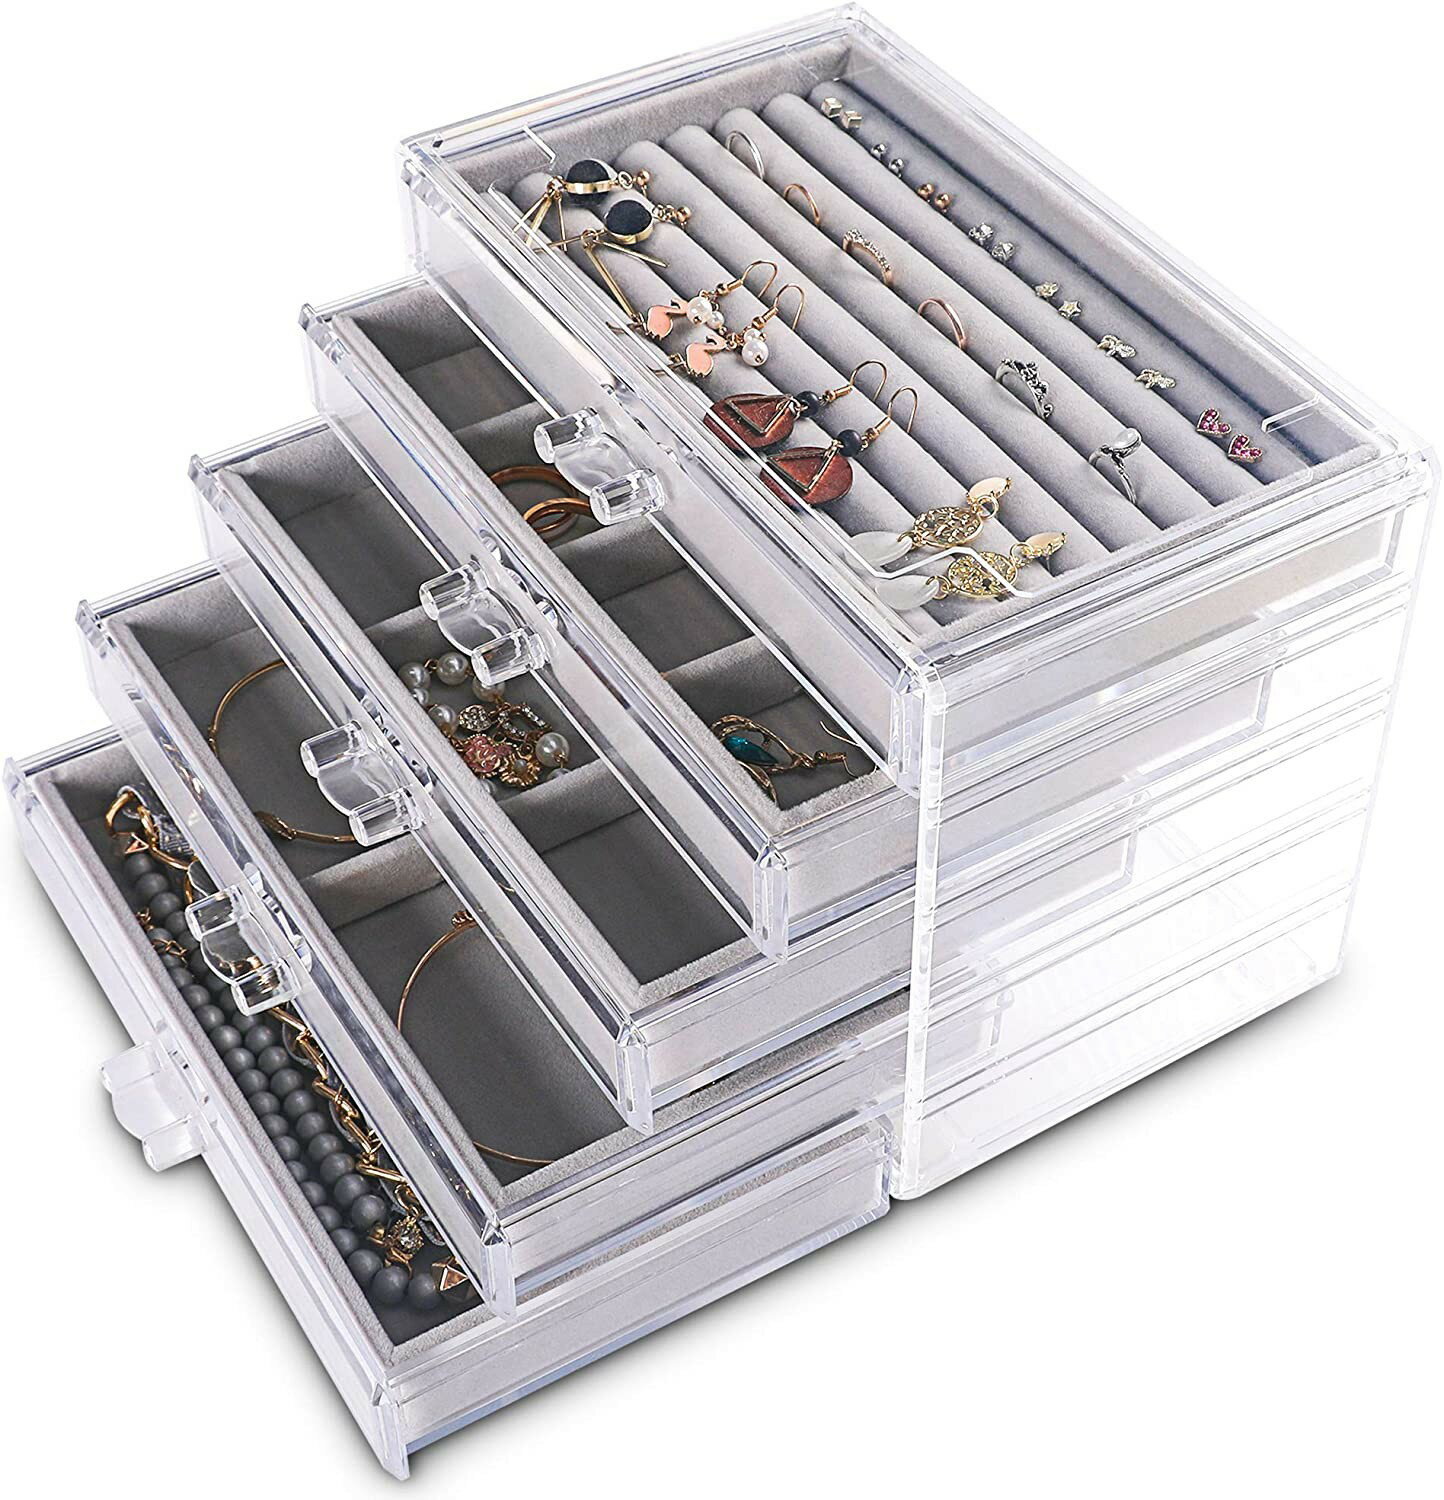 首飾盒耳環耳釘小飾品收納盒家用珠寶盒多格分類整理盒五層